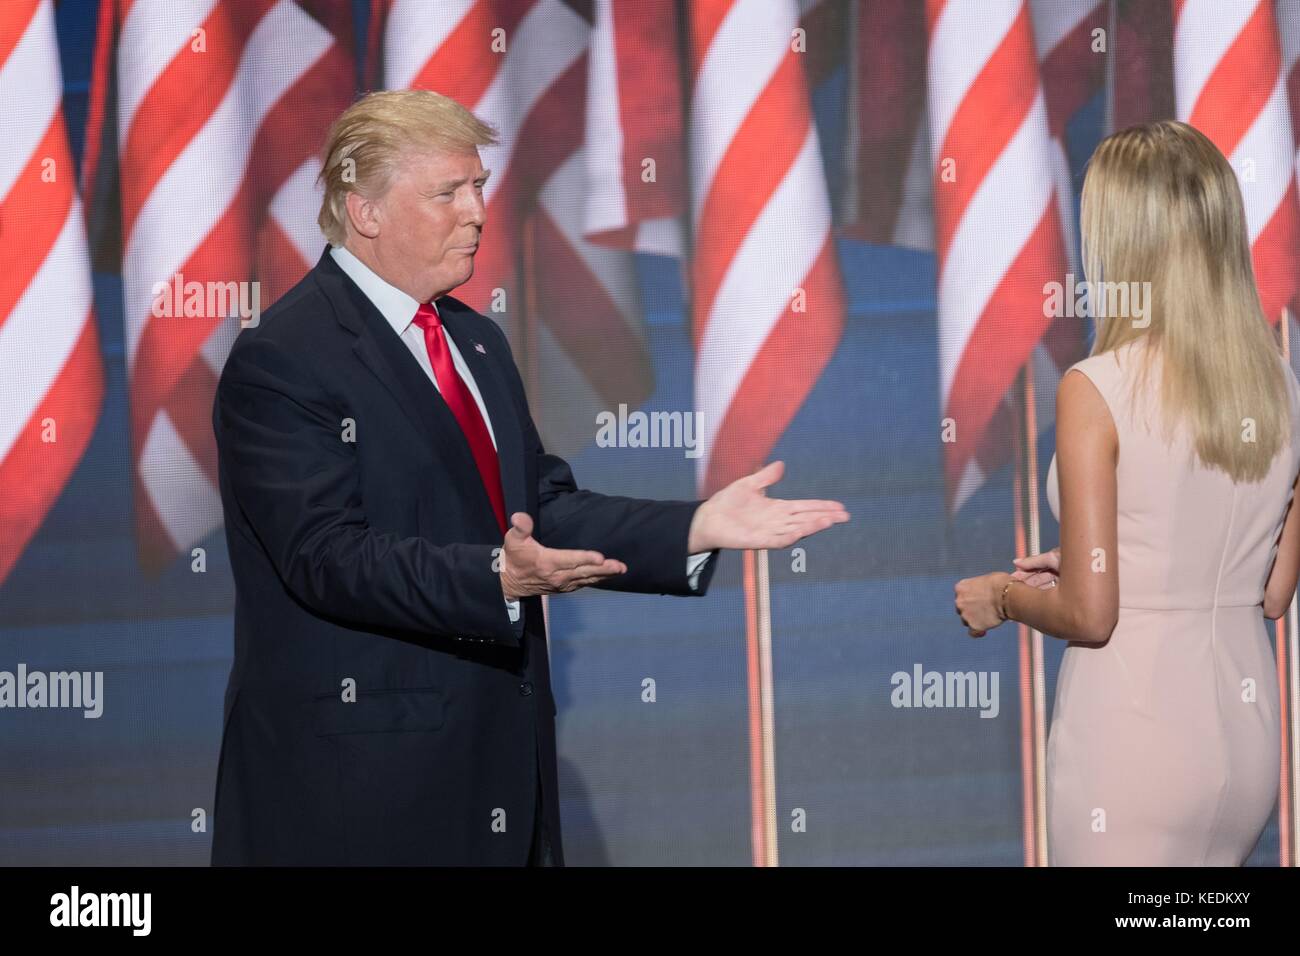 Gop Präsidentschaftskandidaten Donald Trump erreicht die seiner Tochter Ivanka Trump zu umarmen, als er die Bühne betritt die Partei zur Benennung des Präsidenten am letzten Tag der Republican National Convention Juli 21, 2016 in Cleveland, Ohio zu akzeptieren. Stockfoto